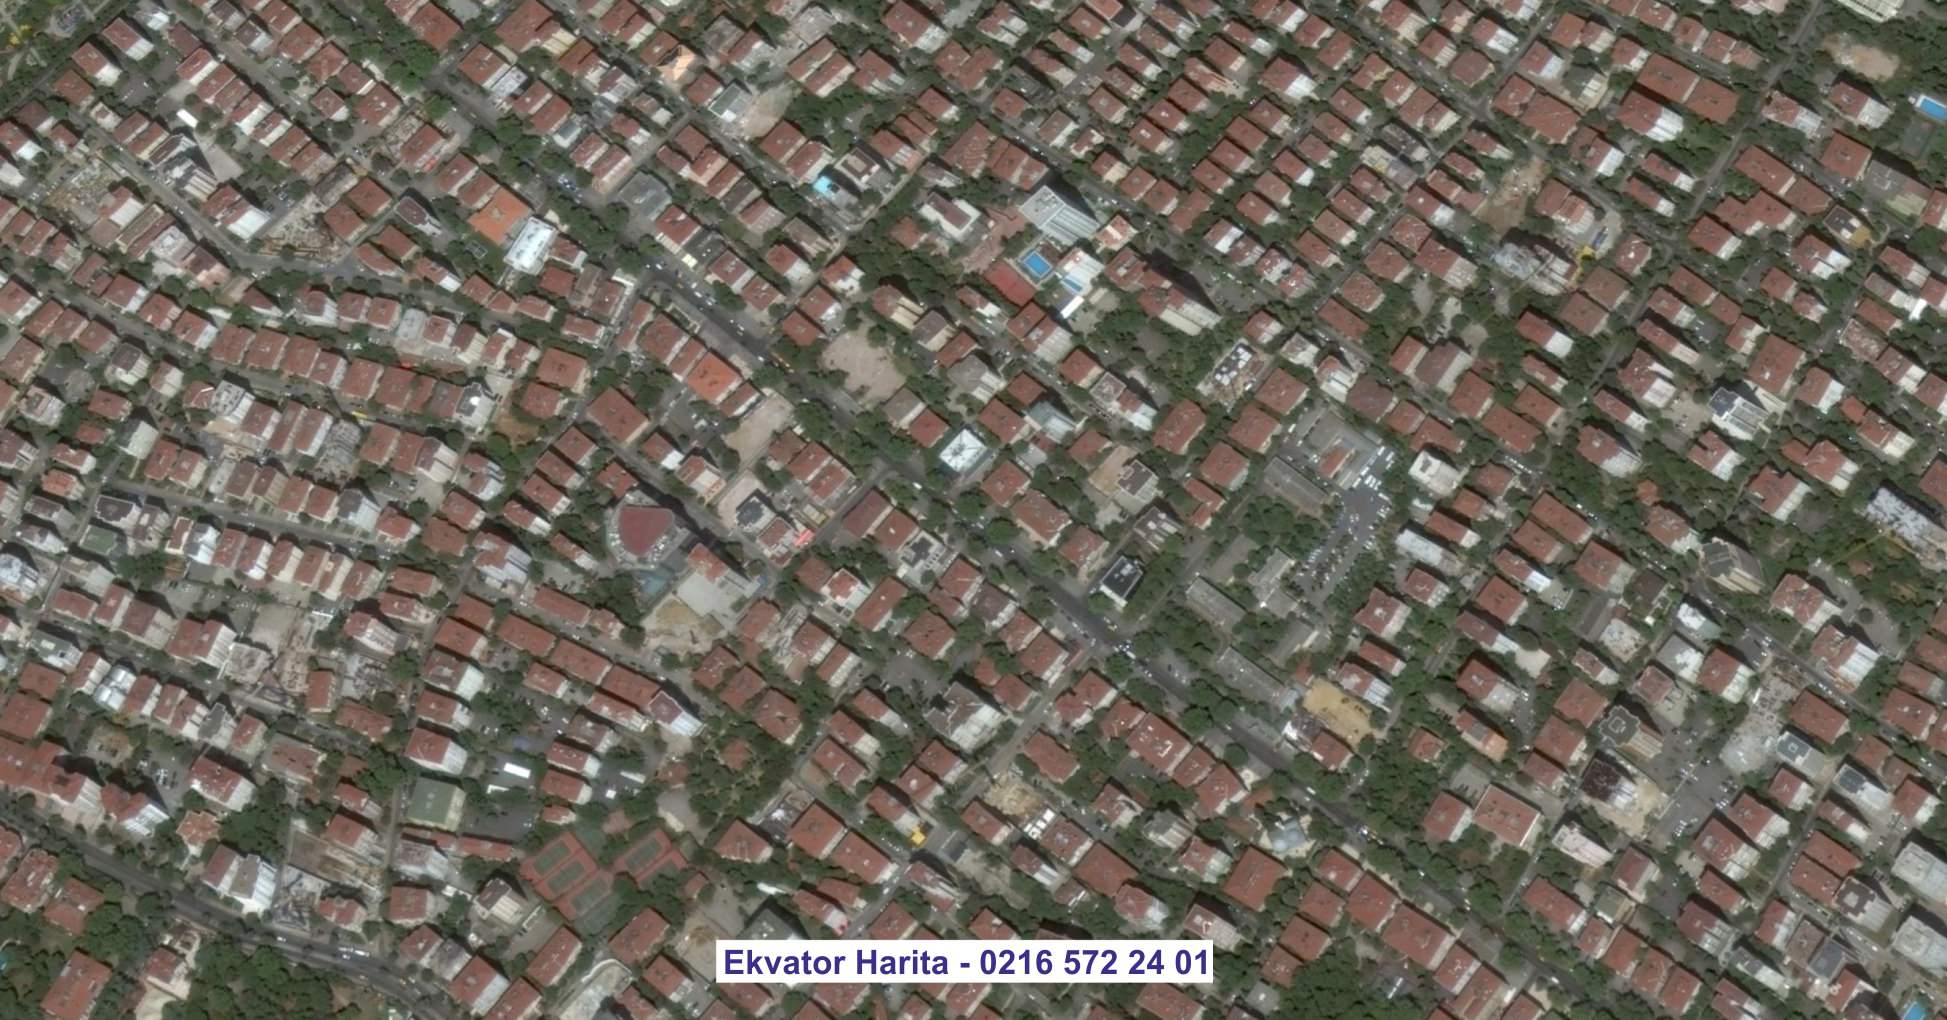 Kocaeli Uydu Görüntüsü Örnek Fotoğrafı